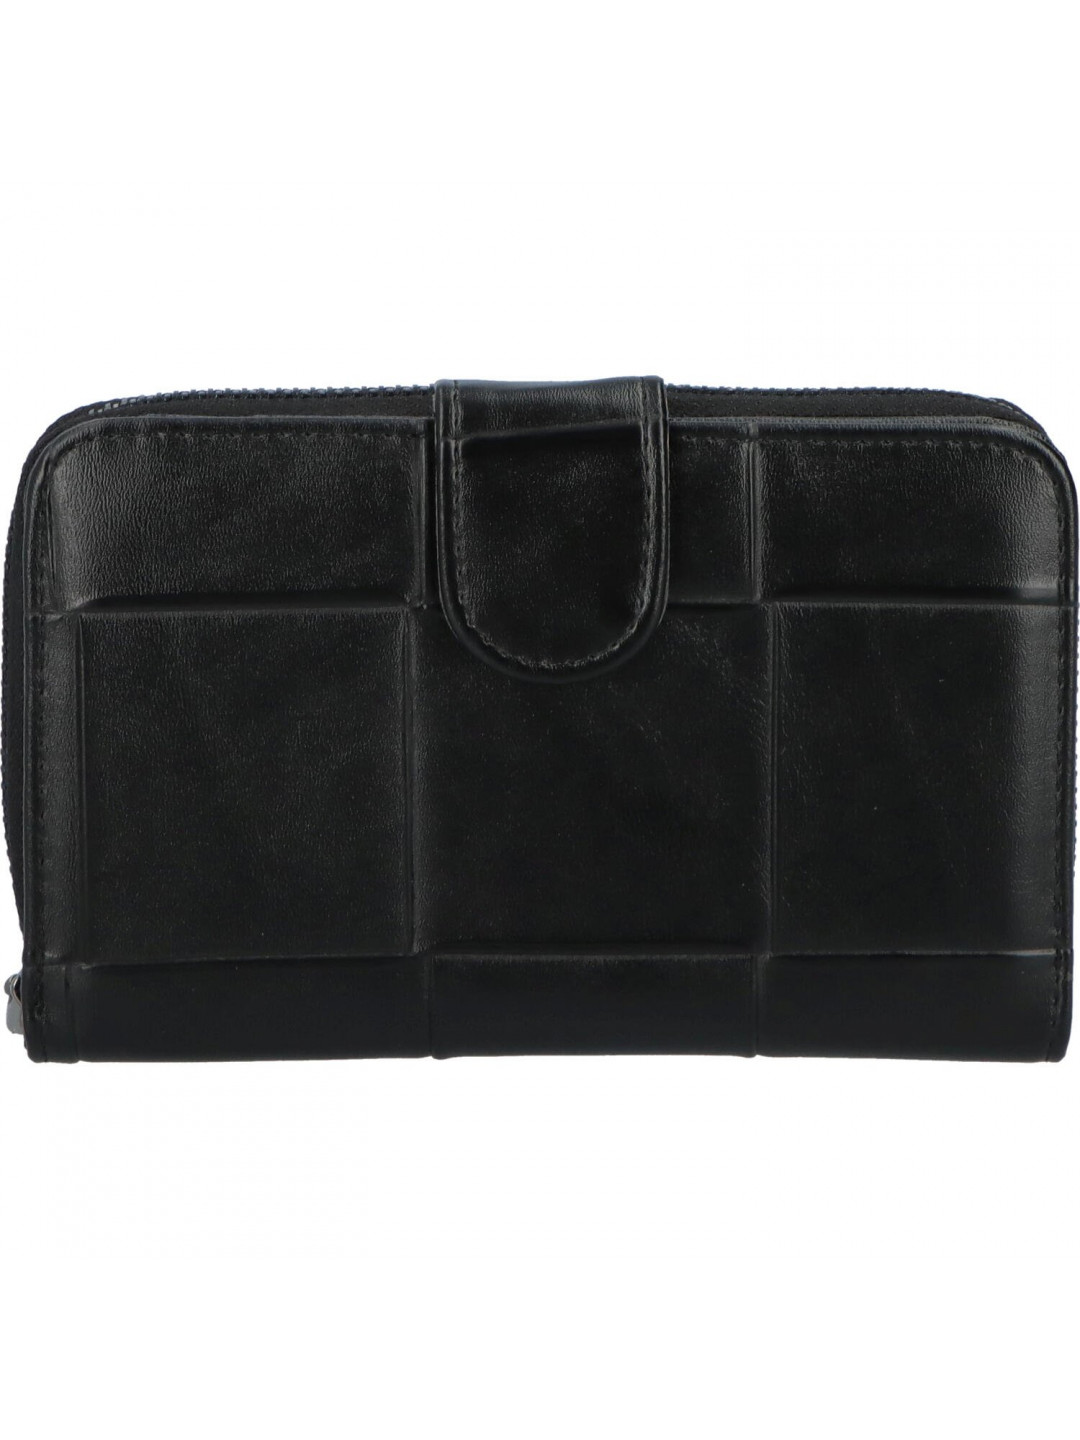 Praktická dámská koženková peněženka Francesca černá